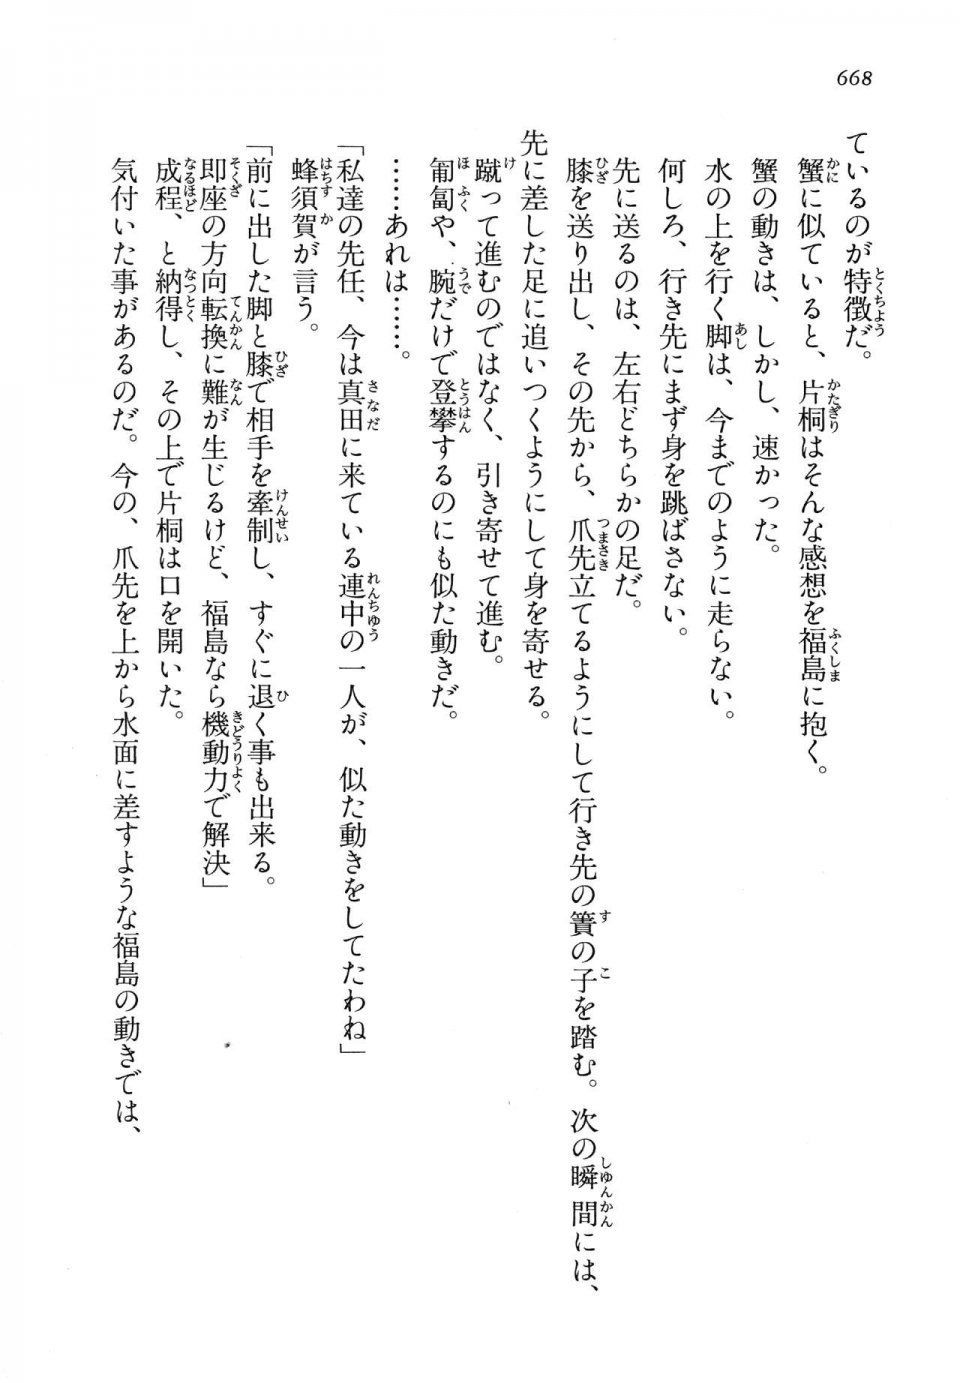 Kyoukai Senjou no Horizon LN Vol 14(6B) - Photo #668